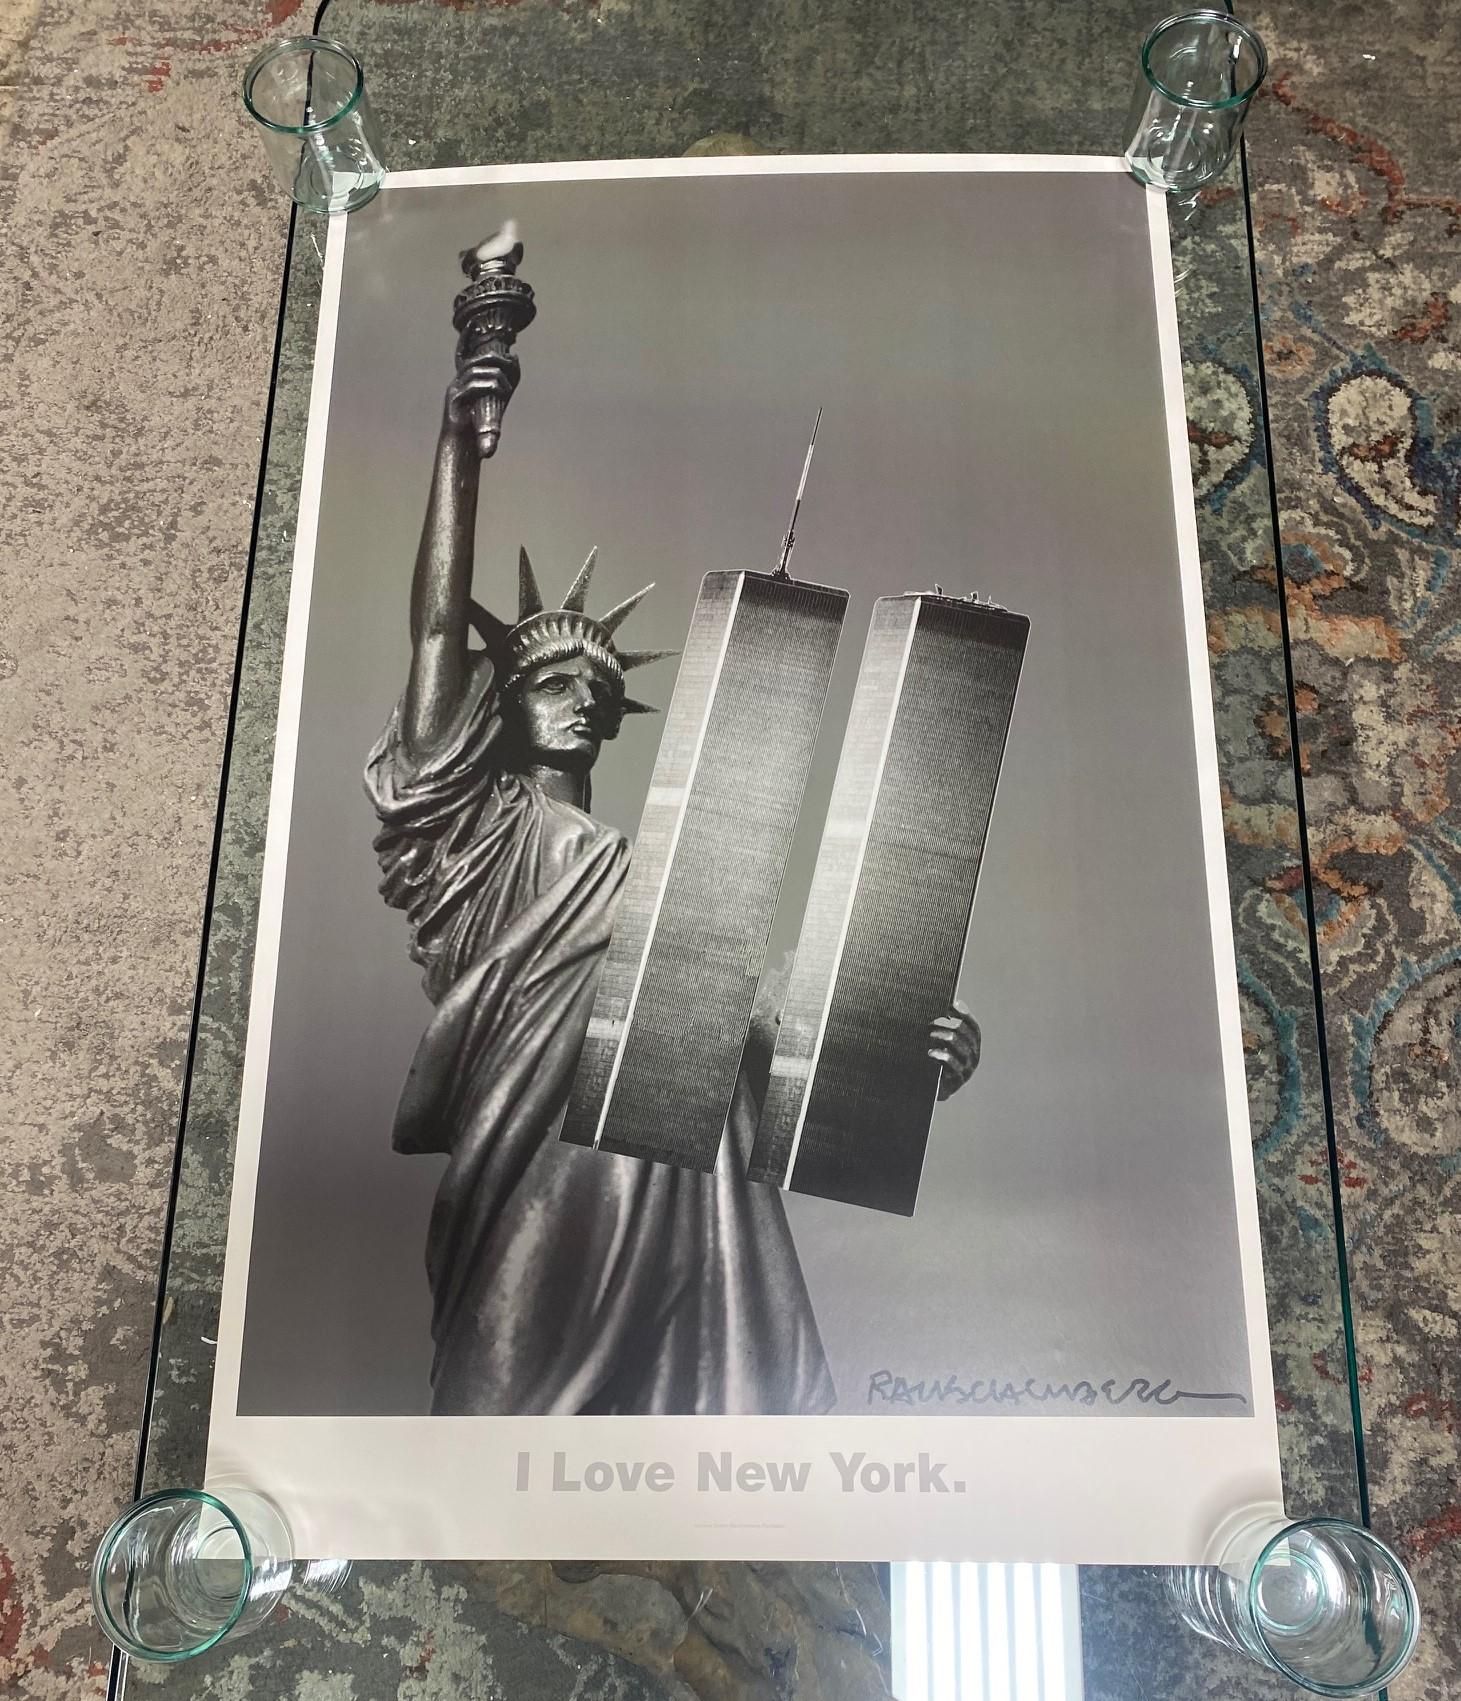 Ein fantastisches, großes, reich gedrucktes Farb-Offsetlithographie-Poster des famosen amerikanischen Künstlers Robert Rauschenberg mit dem Titel
